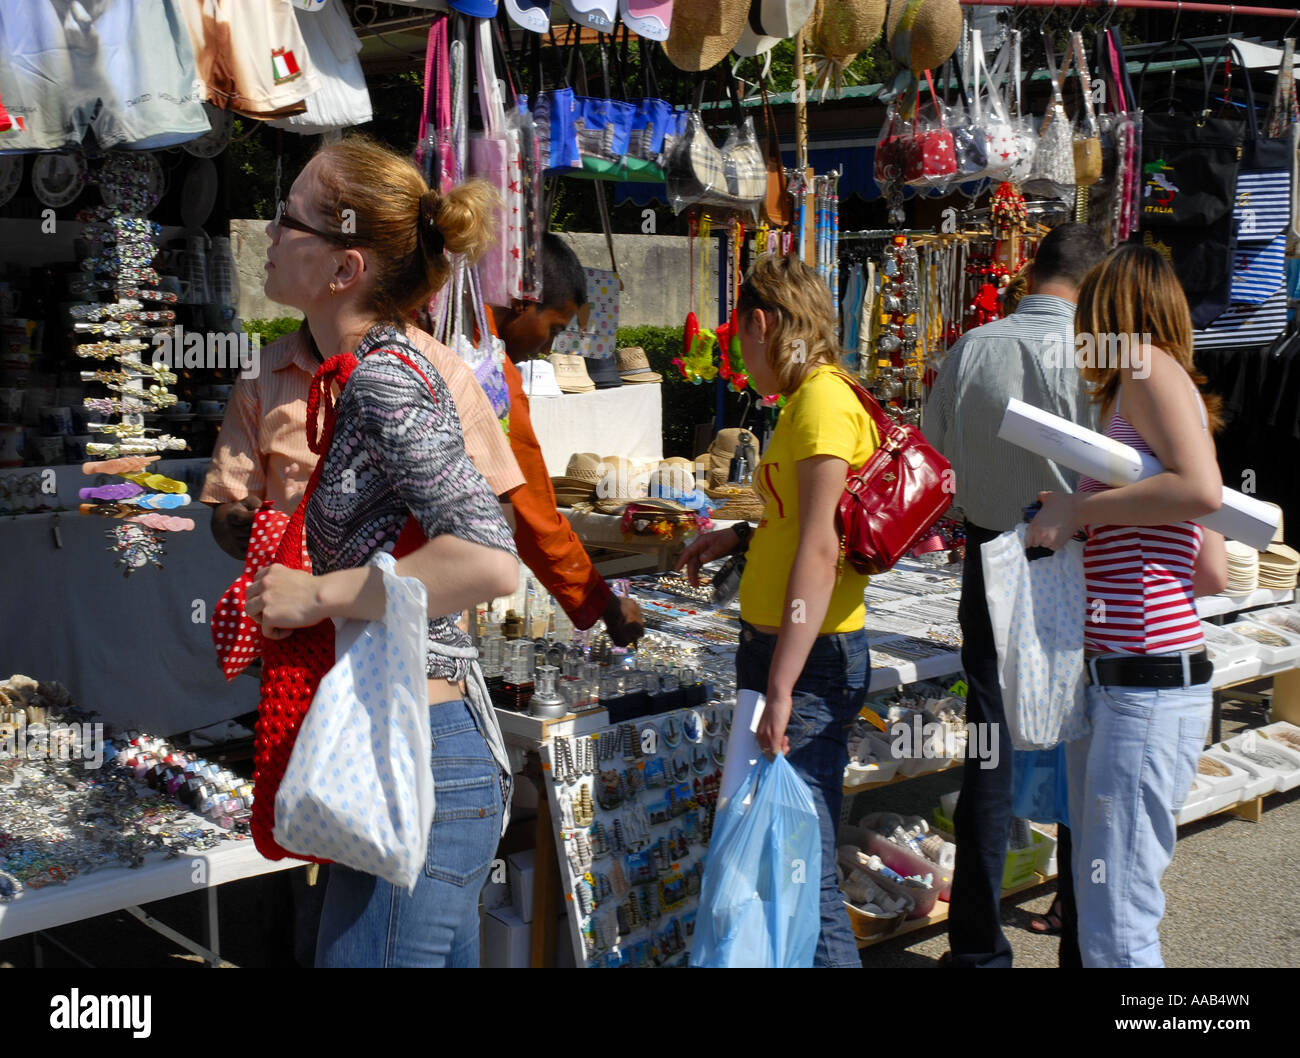 Les touristes à la recherche de sac à main au décrochage, Pise, Italie Banque D'Images